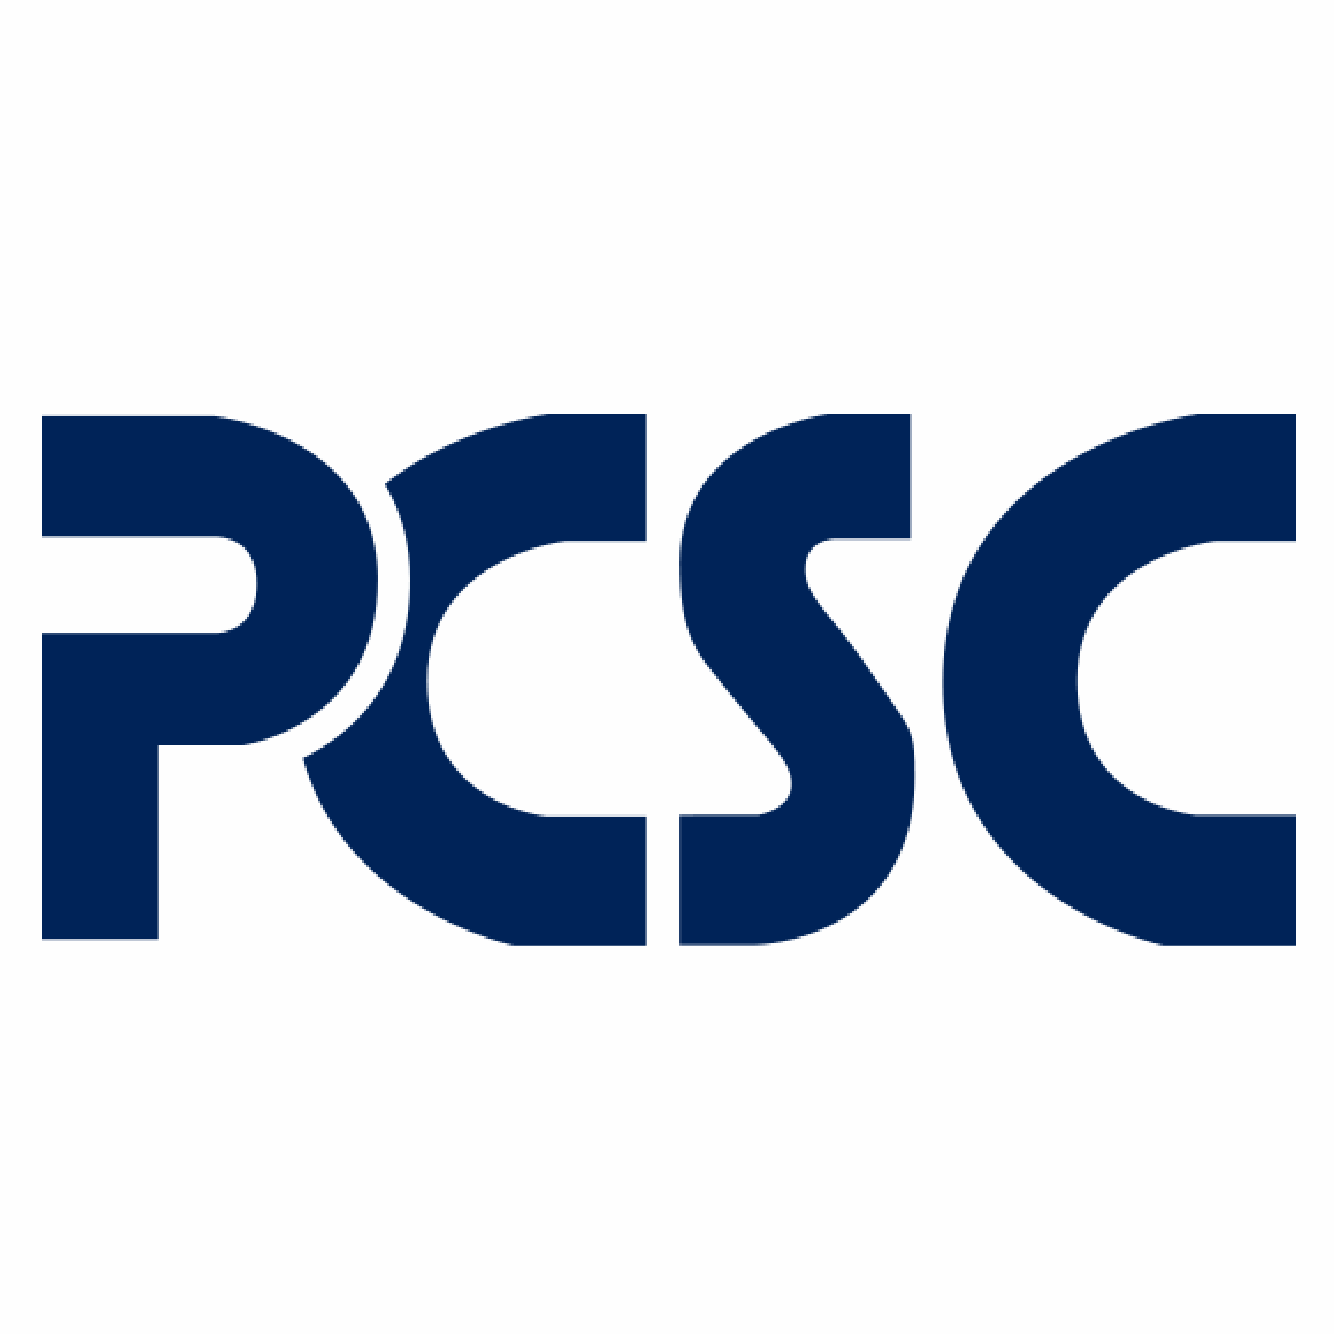 https://securetech.local/wp-content/uploads/2019/02/18.PCSC_.png